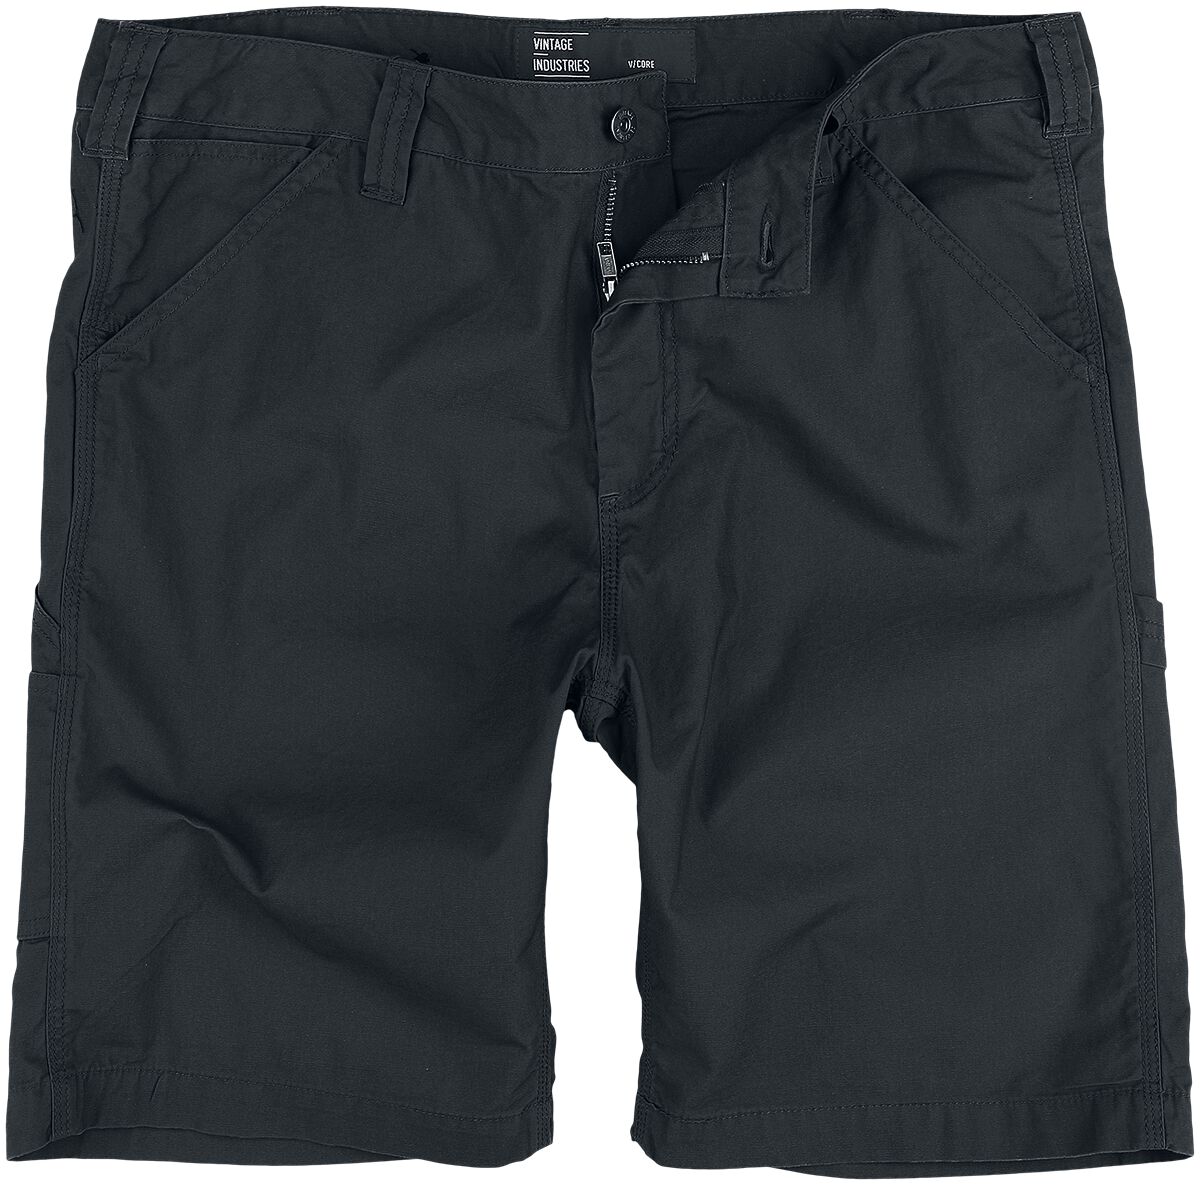 Vintage Industries Short - Alcott Shorts - XS bis 3XL - für Männer - Größe S - schwarz